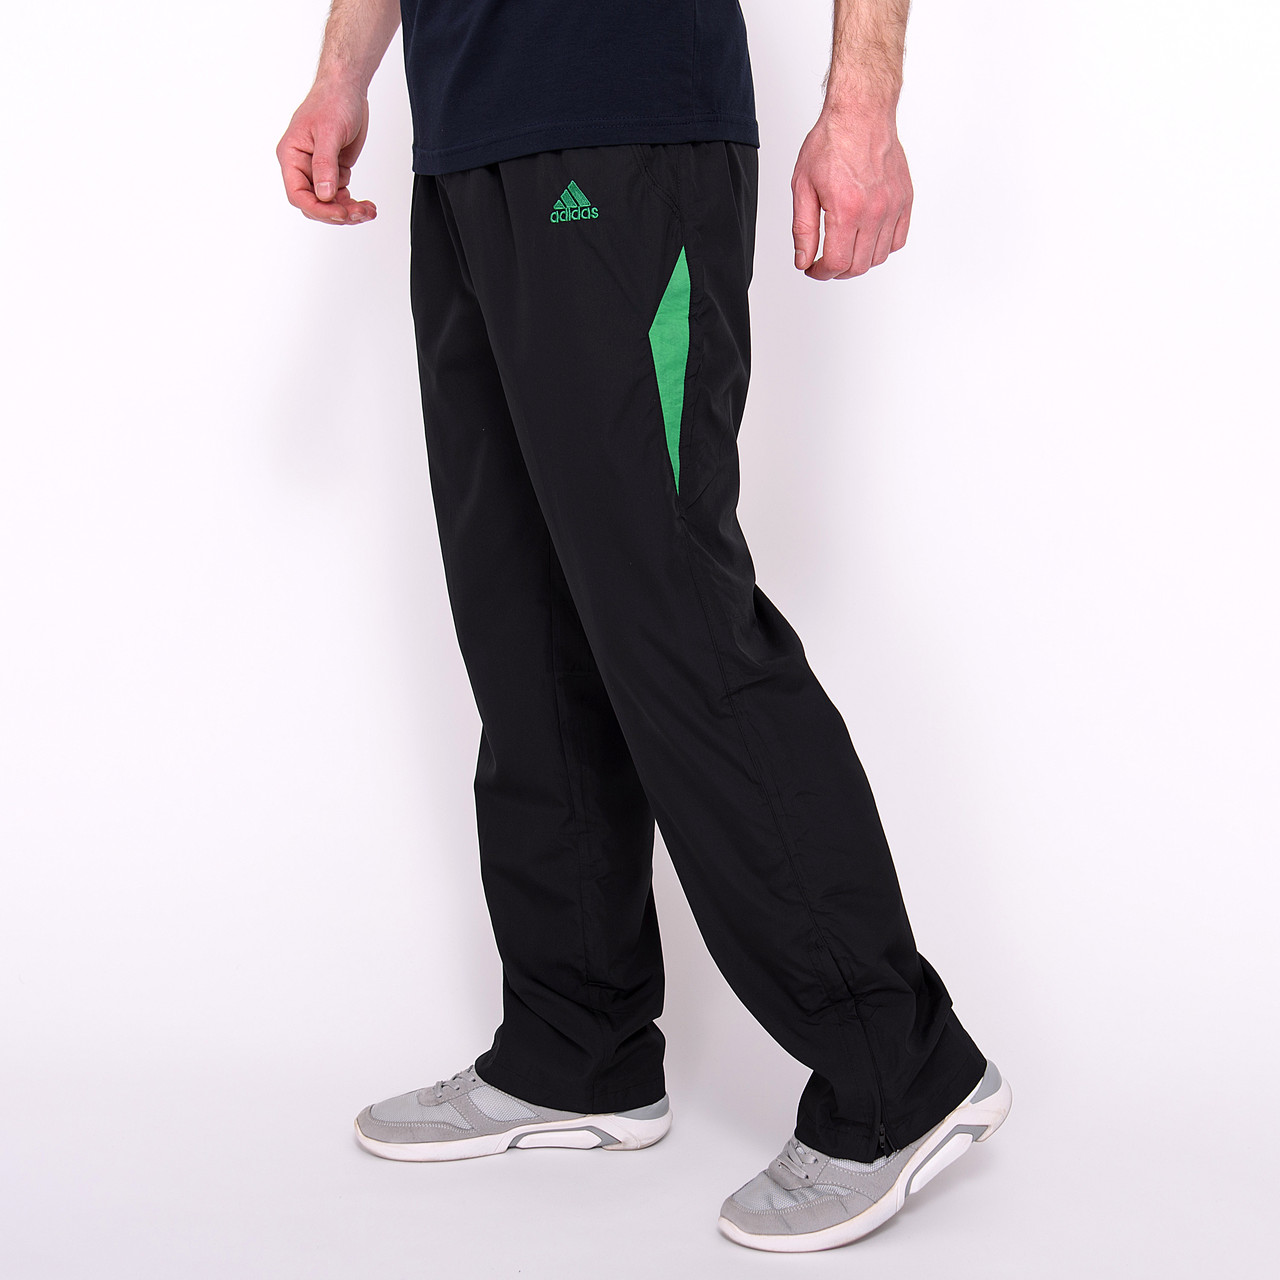 Чоловічі спортивні штани Adidas, чорного кольору (плащівка) розмір S.